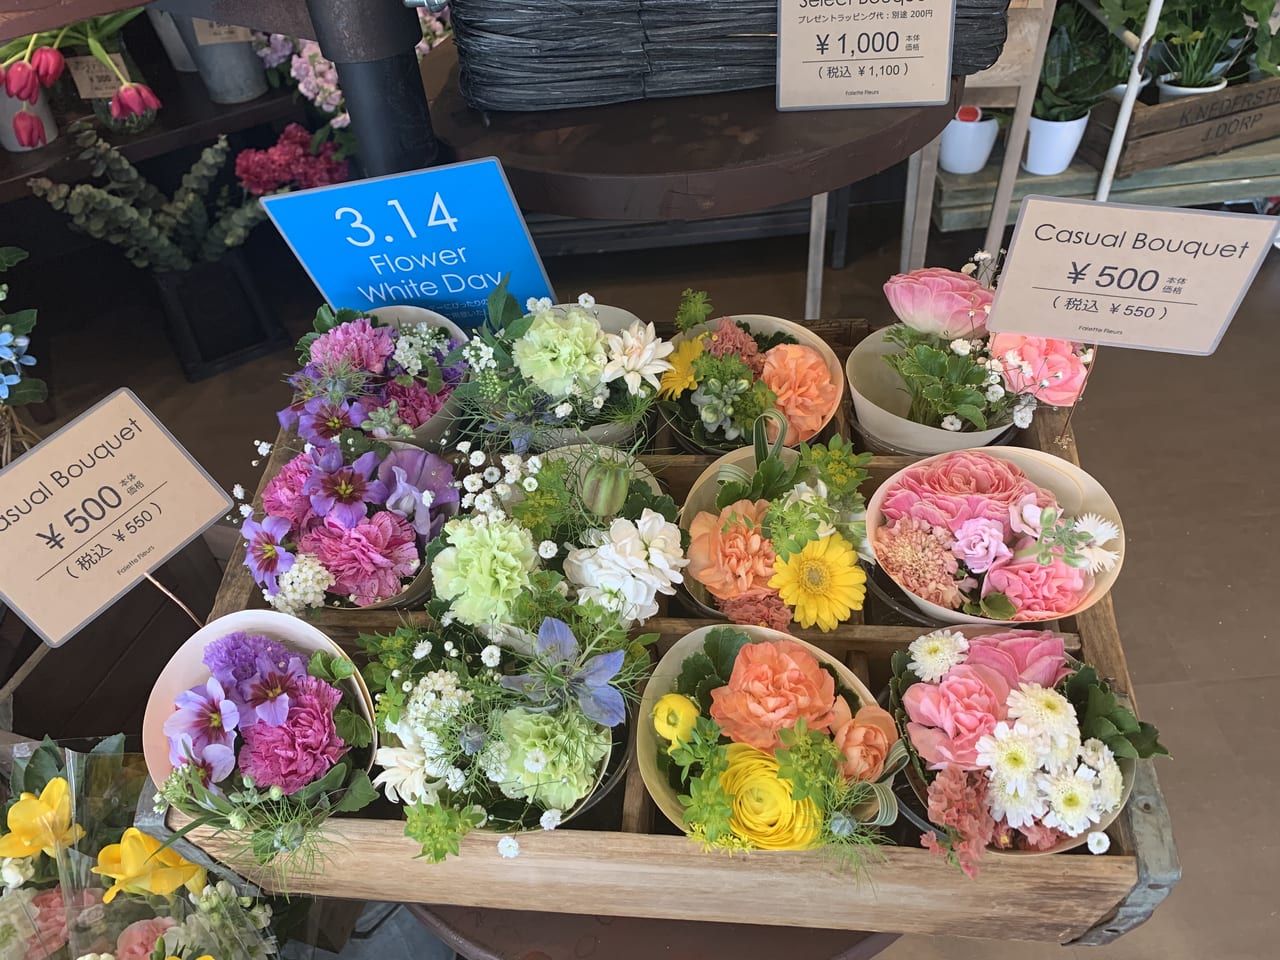 尼崎市 阪急塚口の駅ナカにおしゃれな花屋さん ファレットフルール がオープンしています 号外net 尼崎市